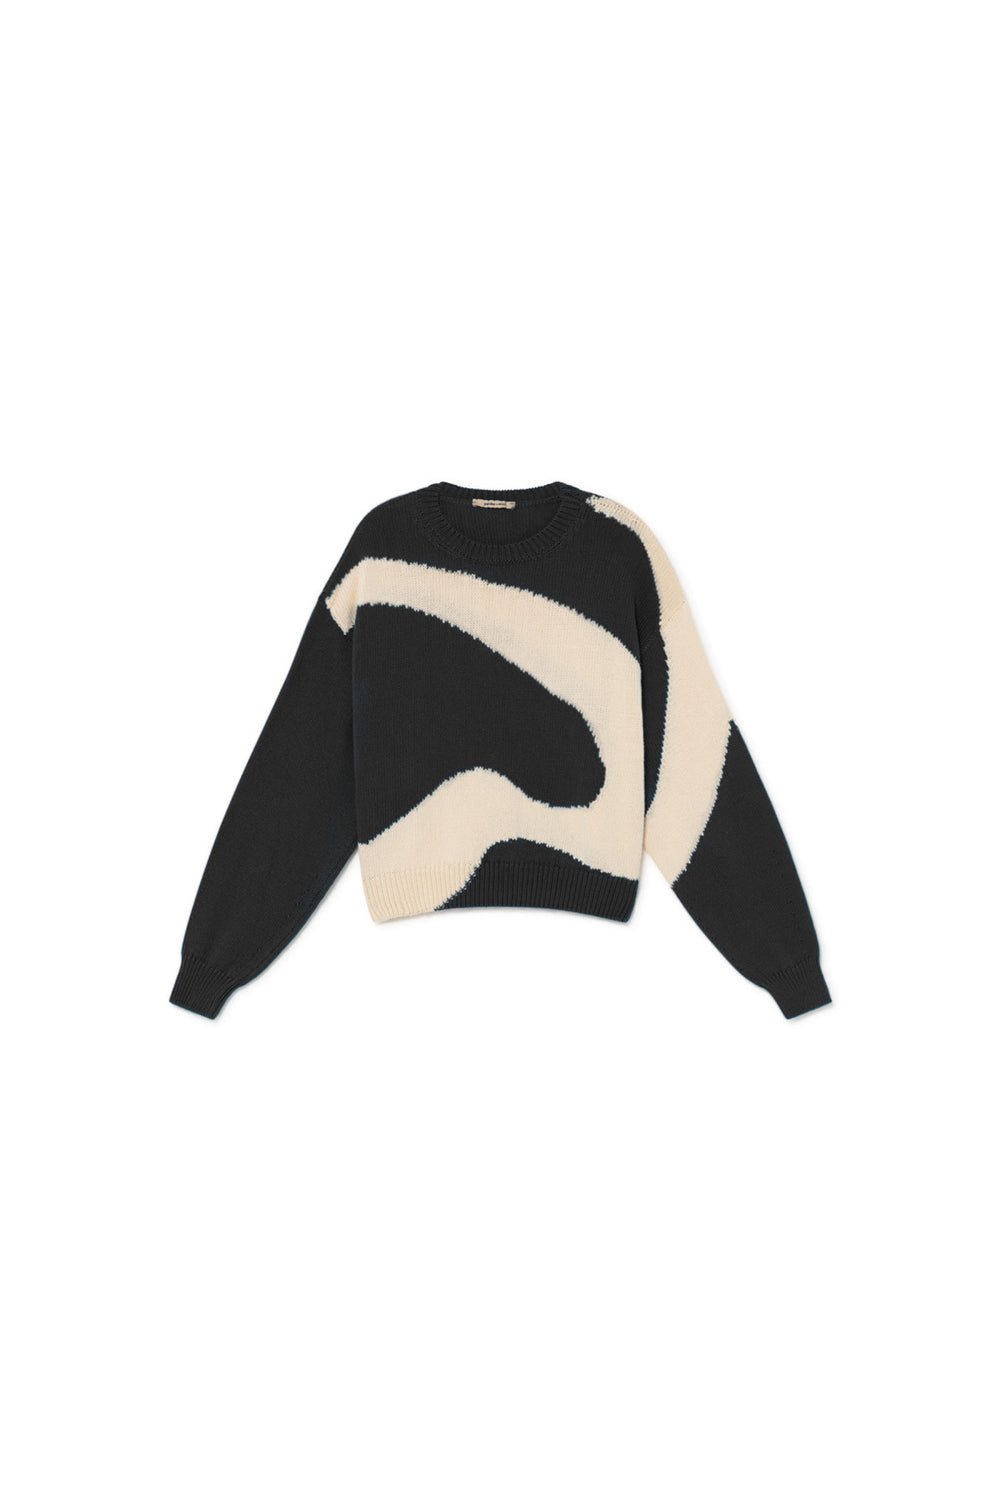 Black Pin Sweater